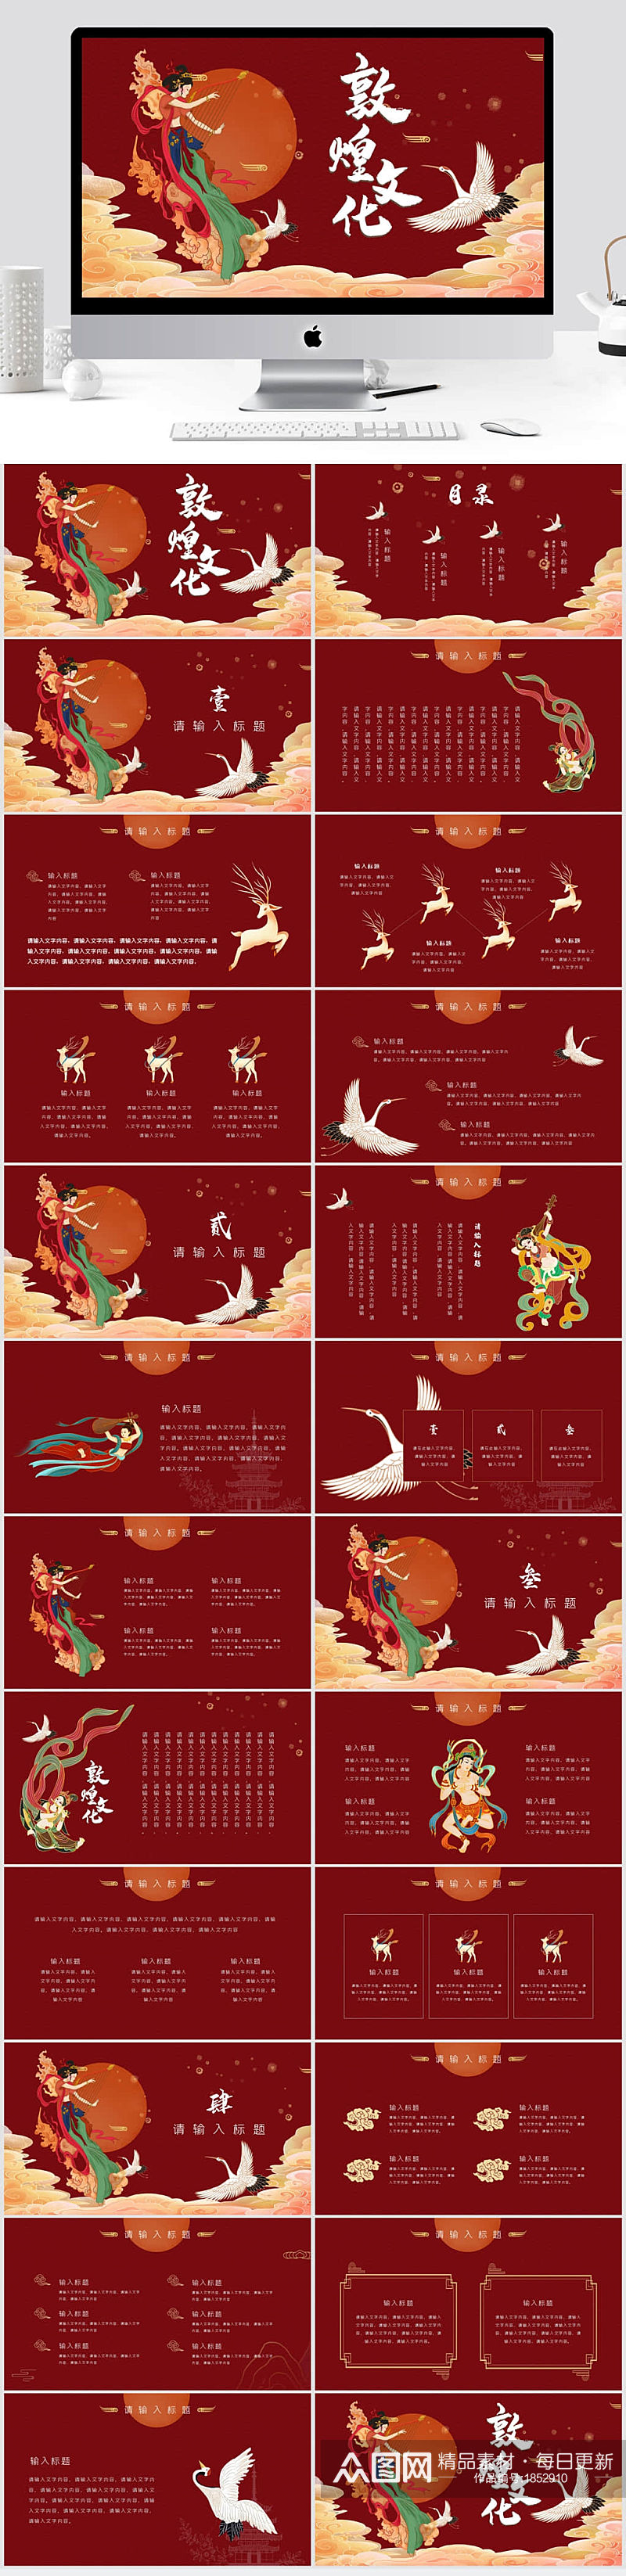 红色创意国潮手绘中国风敦煌文化PPT模板 敦煌风PPT素材